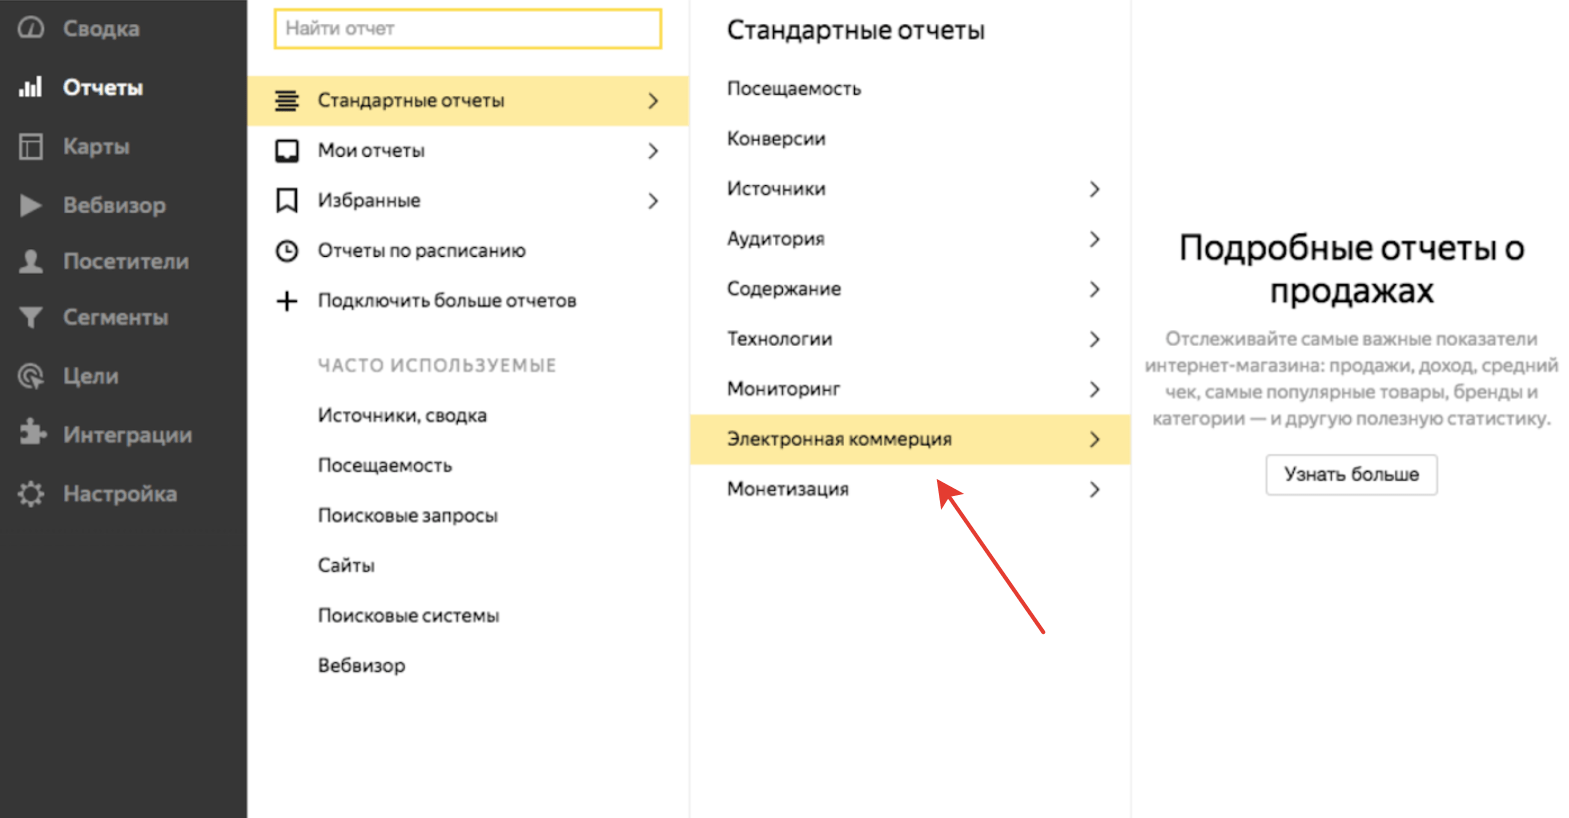 Электронная коммерция в Яндекс.Метрике-23